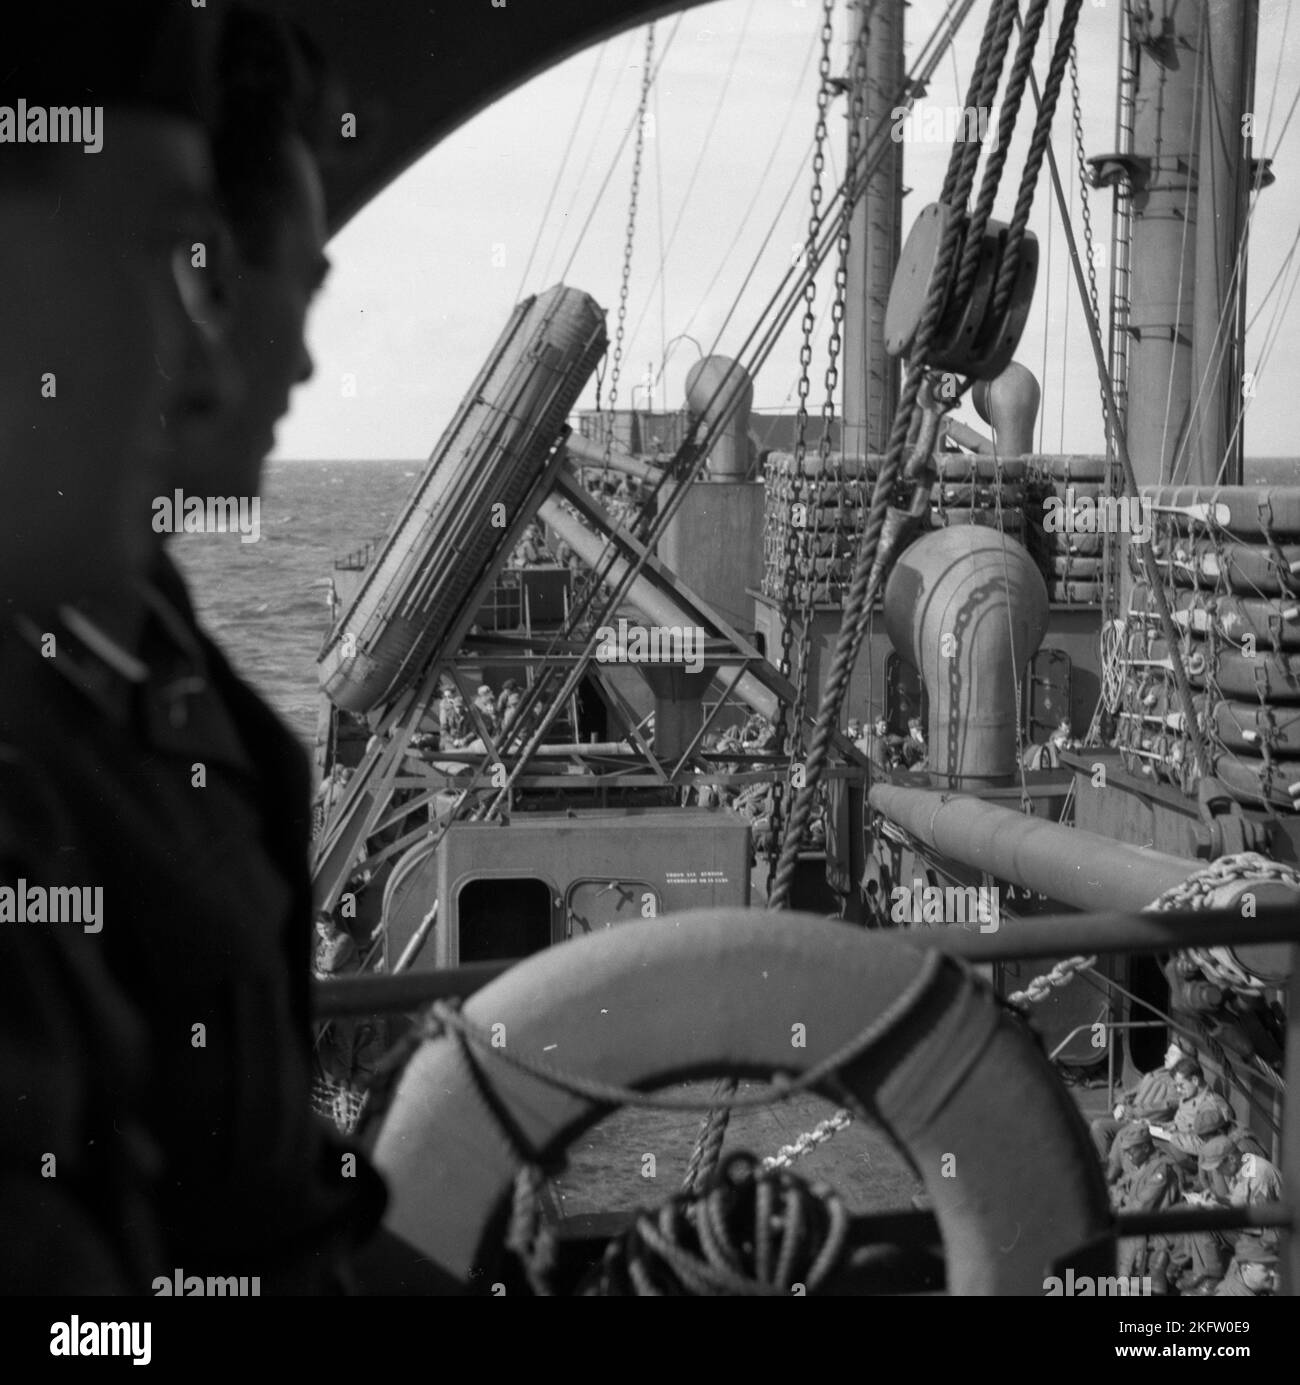 Männer, die auf dem Schiff sitzen. Veteranen der United States Army kommen nach dem Zweiten Weltkrieg auf dem Elgin Victory Schiff nach Hause SS Elgin Victory, ein von Permanente Metals gebautes Schiff vom Typ VC2-S-AP2 Victory Stockfoto